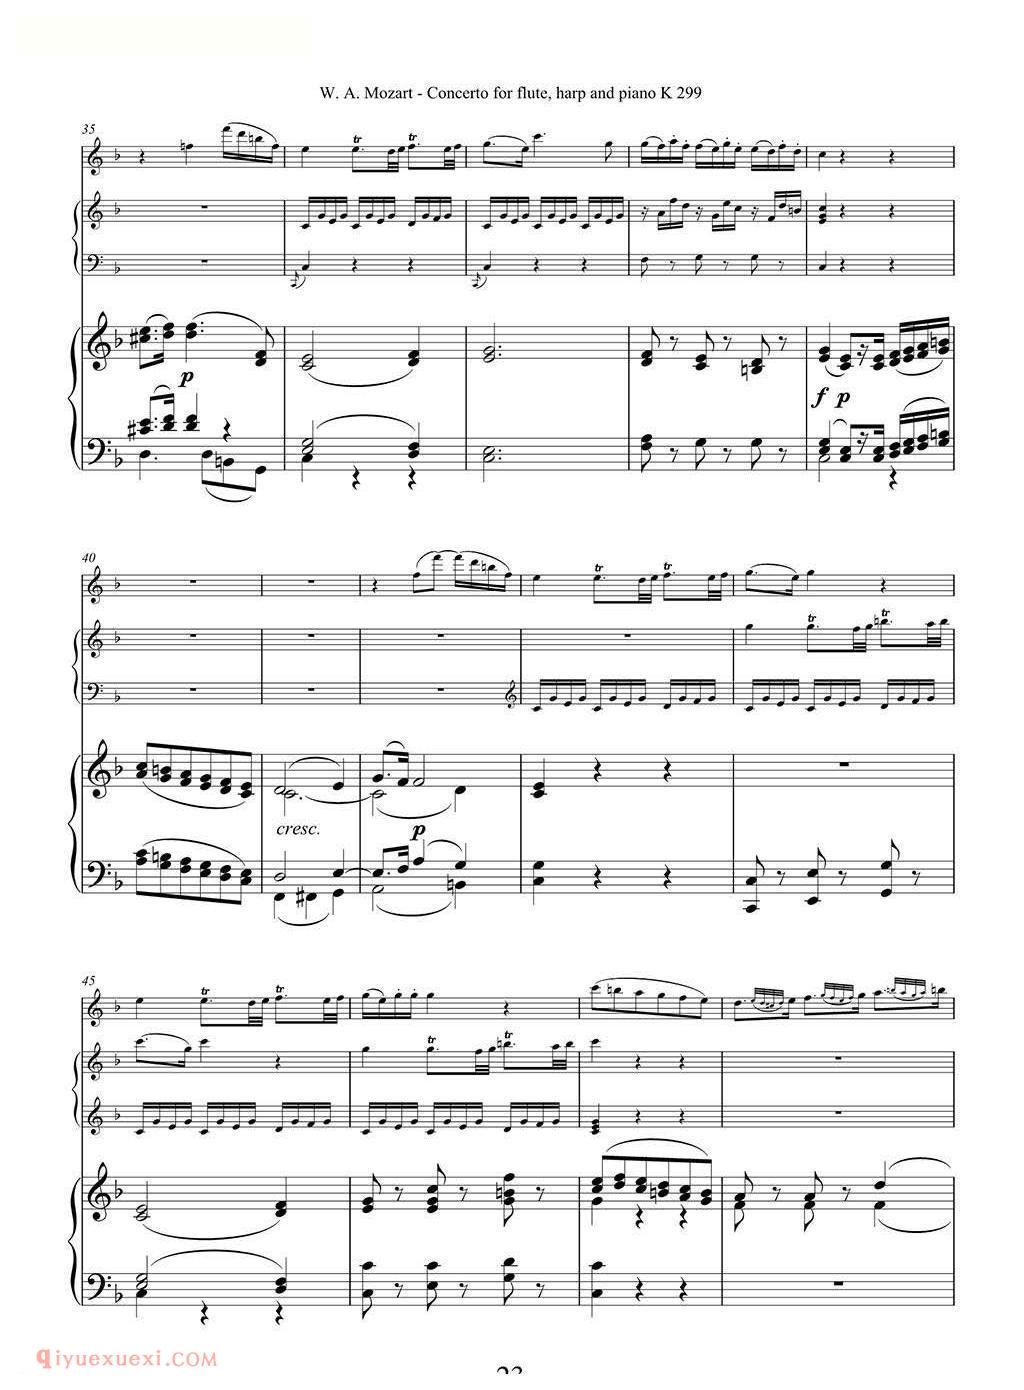 长笛竖琴钢伴谱/莫扎特C大调长笛竖琴协奏曲 K.299 Ⅱ